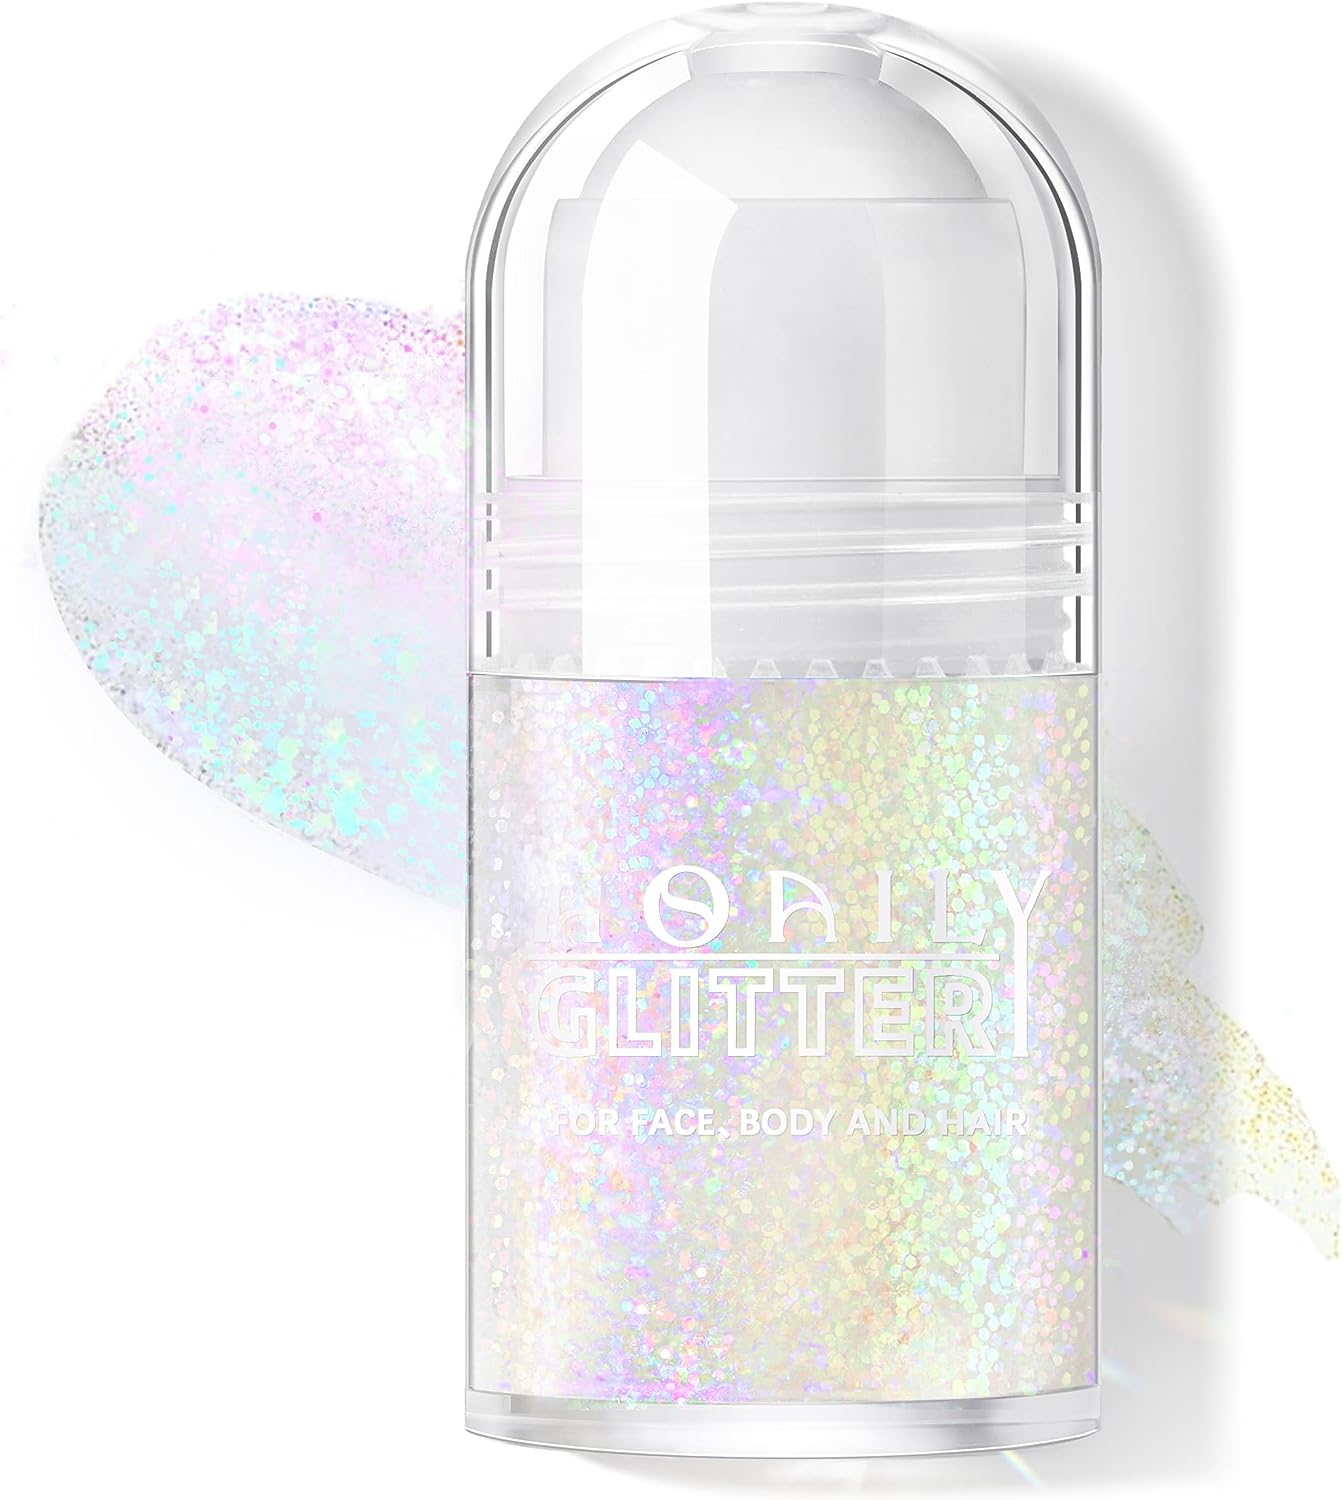 Erinde Body Glitter Spray -for Hair Body Shimmering Spray Powder